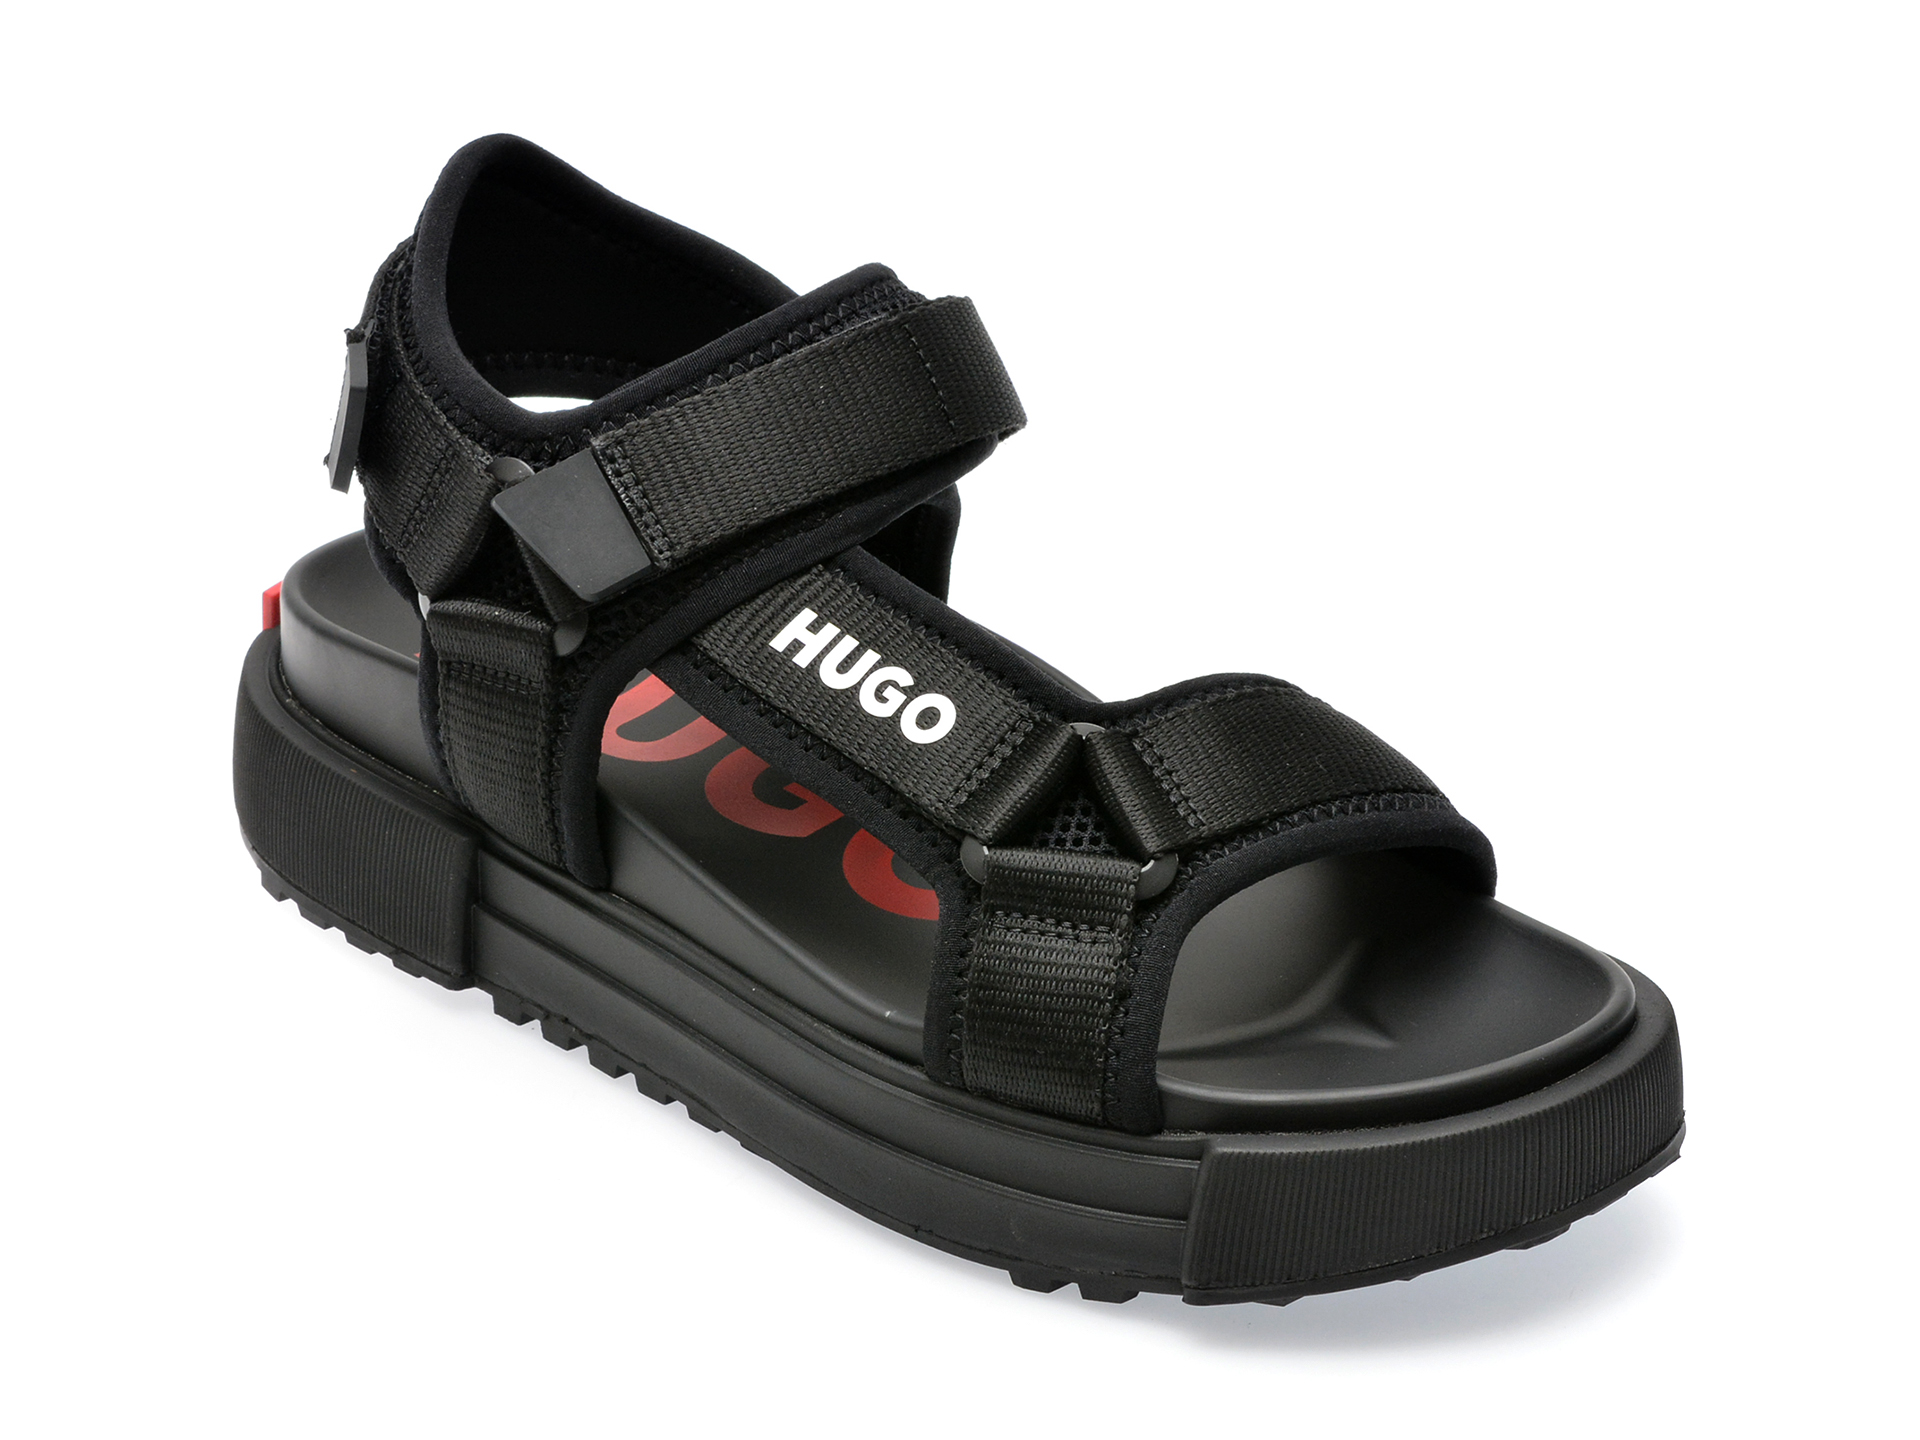 Sandale HUGO negre, 3173, din material textil imagine reduceri black friday 2021 HUGO